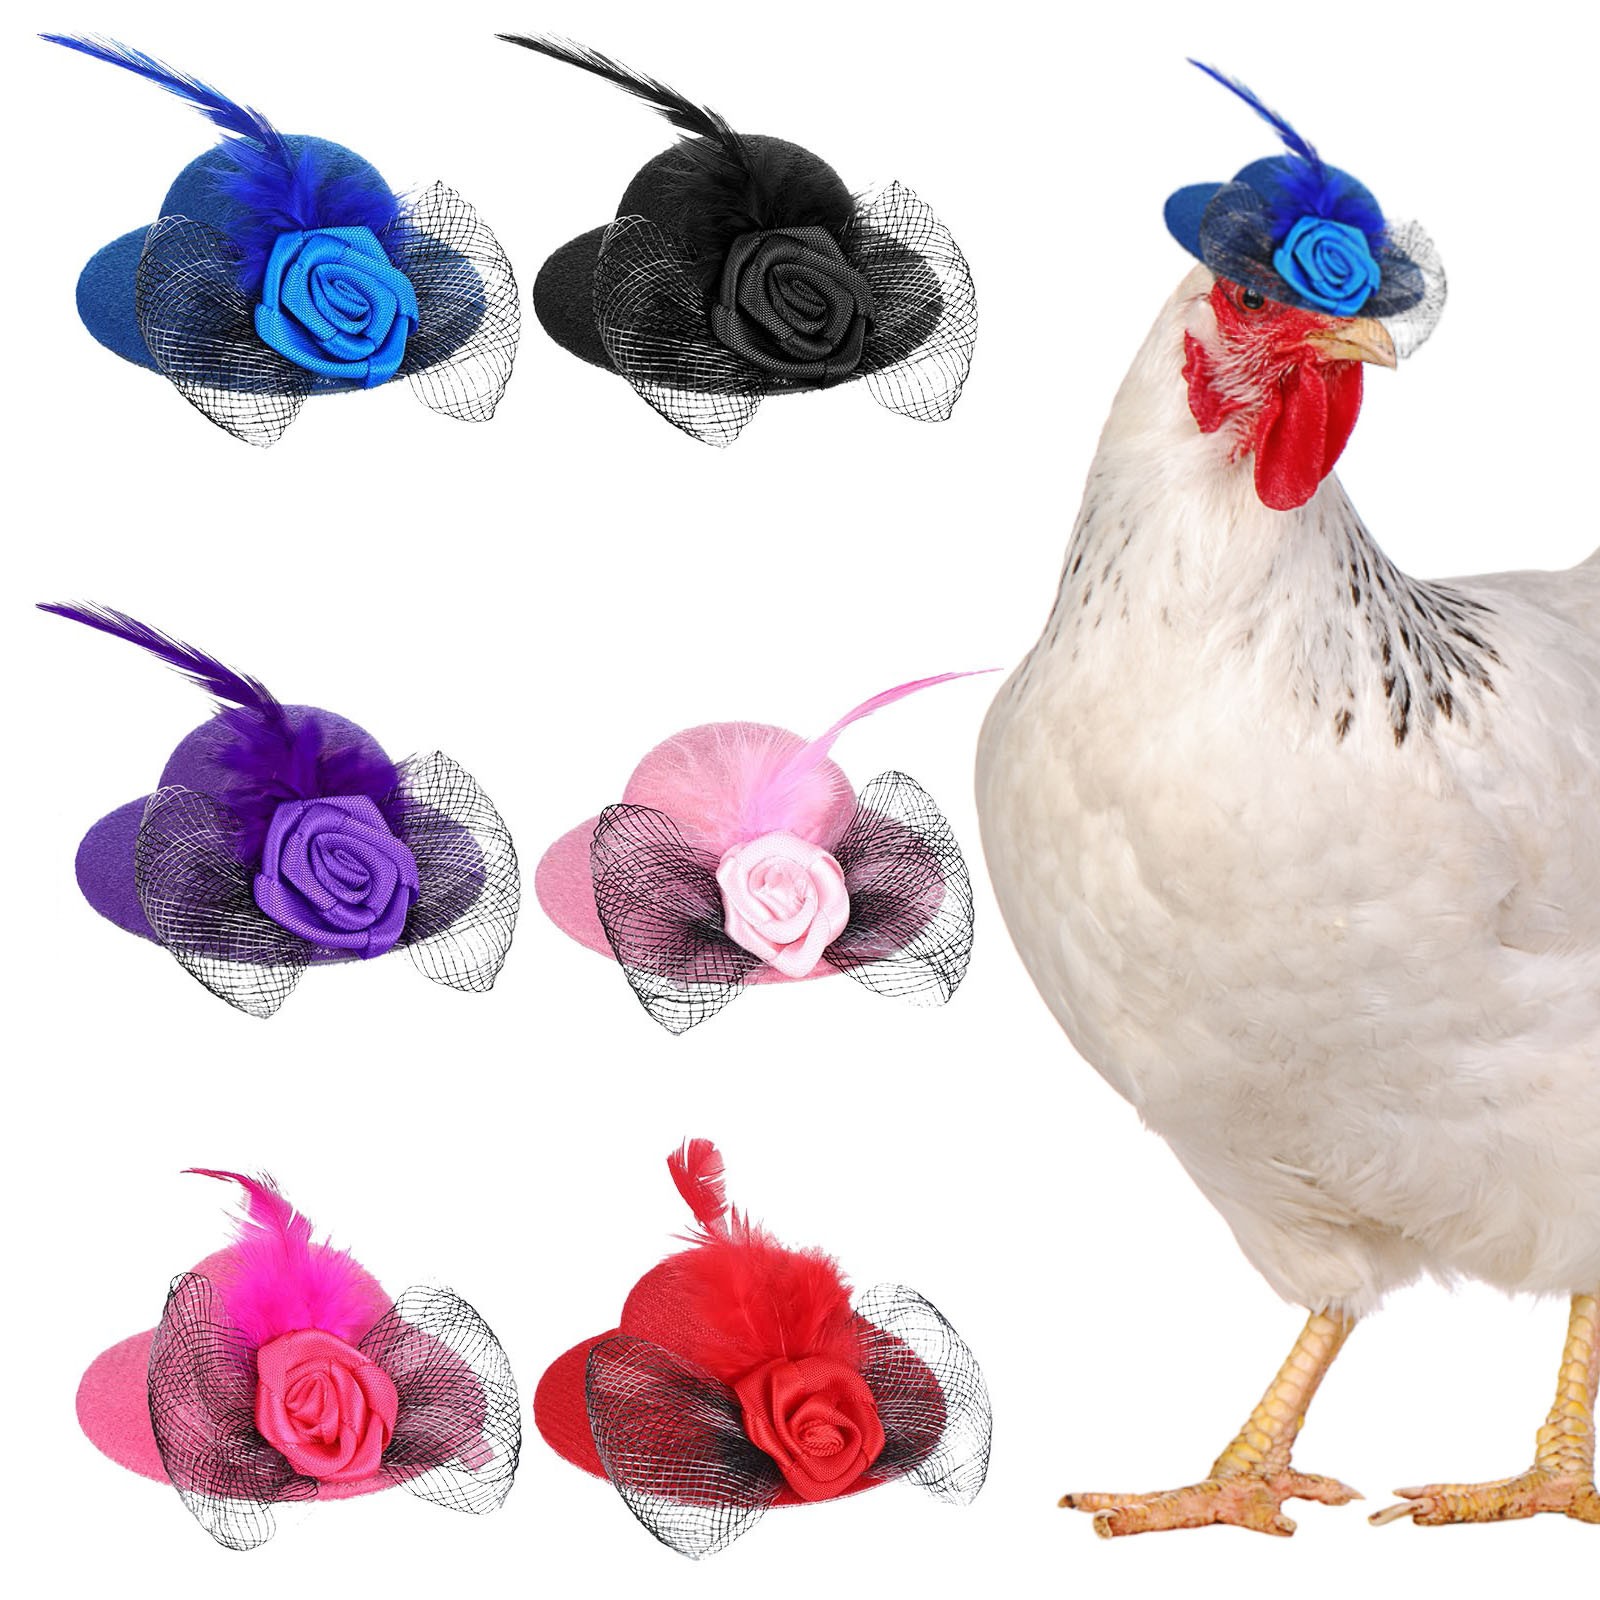 Куриные шляпы для курицы маленькие забавные куриные аксессуары переность шляпу петух утка попугай -попугай Хомять Поултри Стильное шоу Костюм